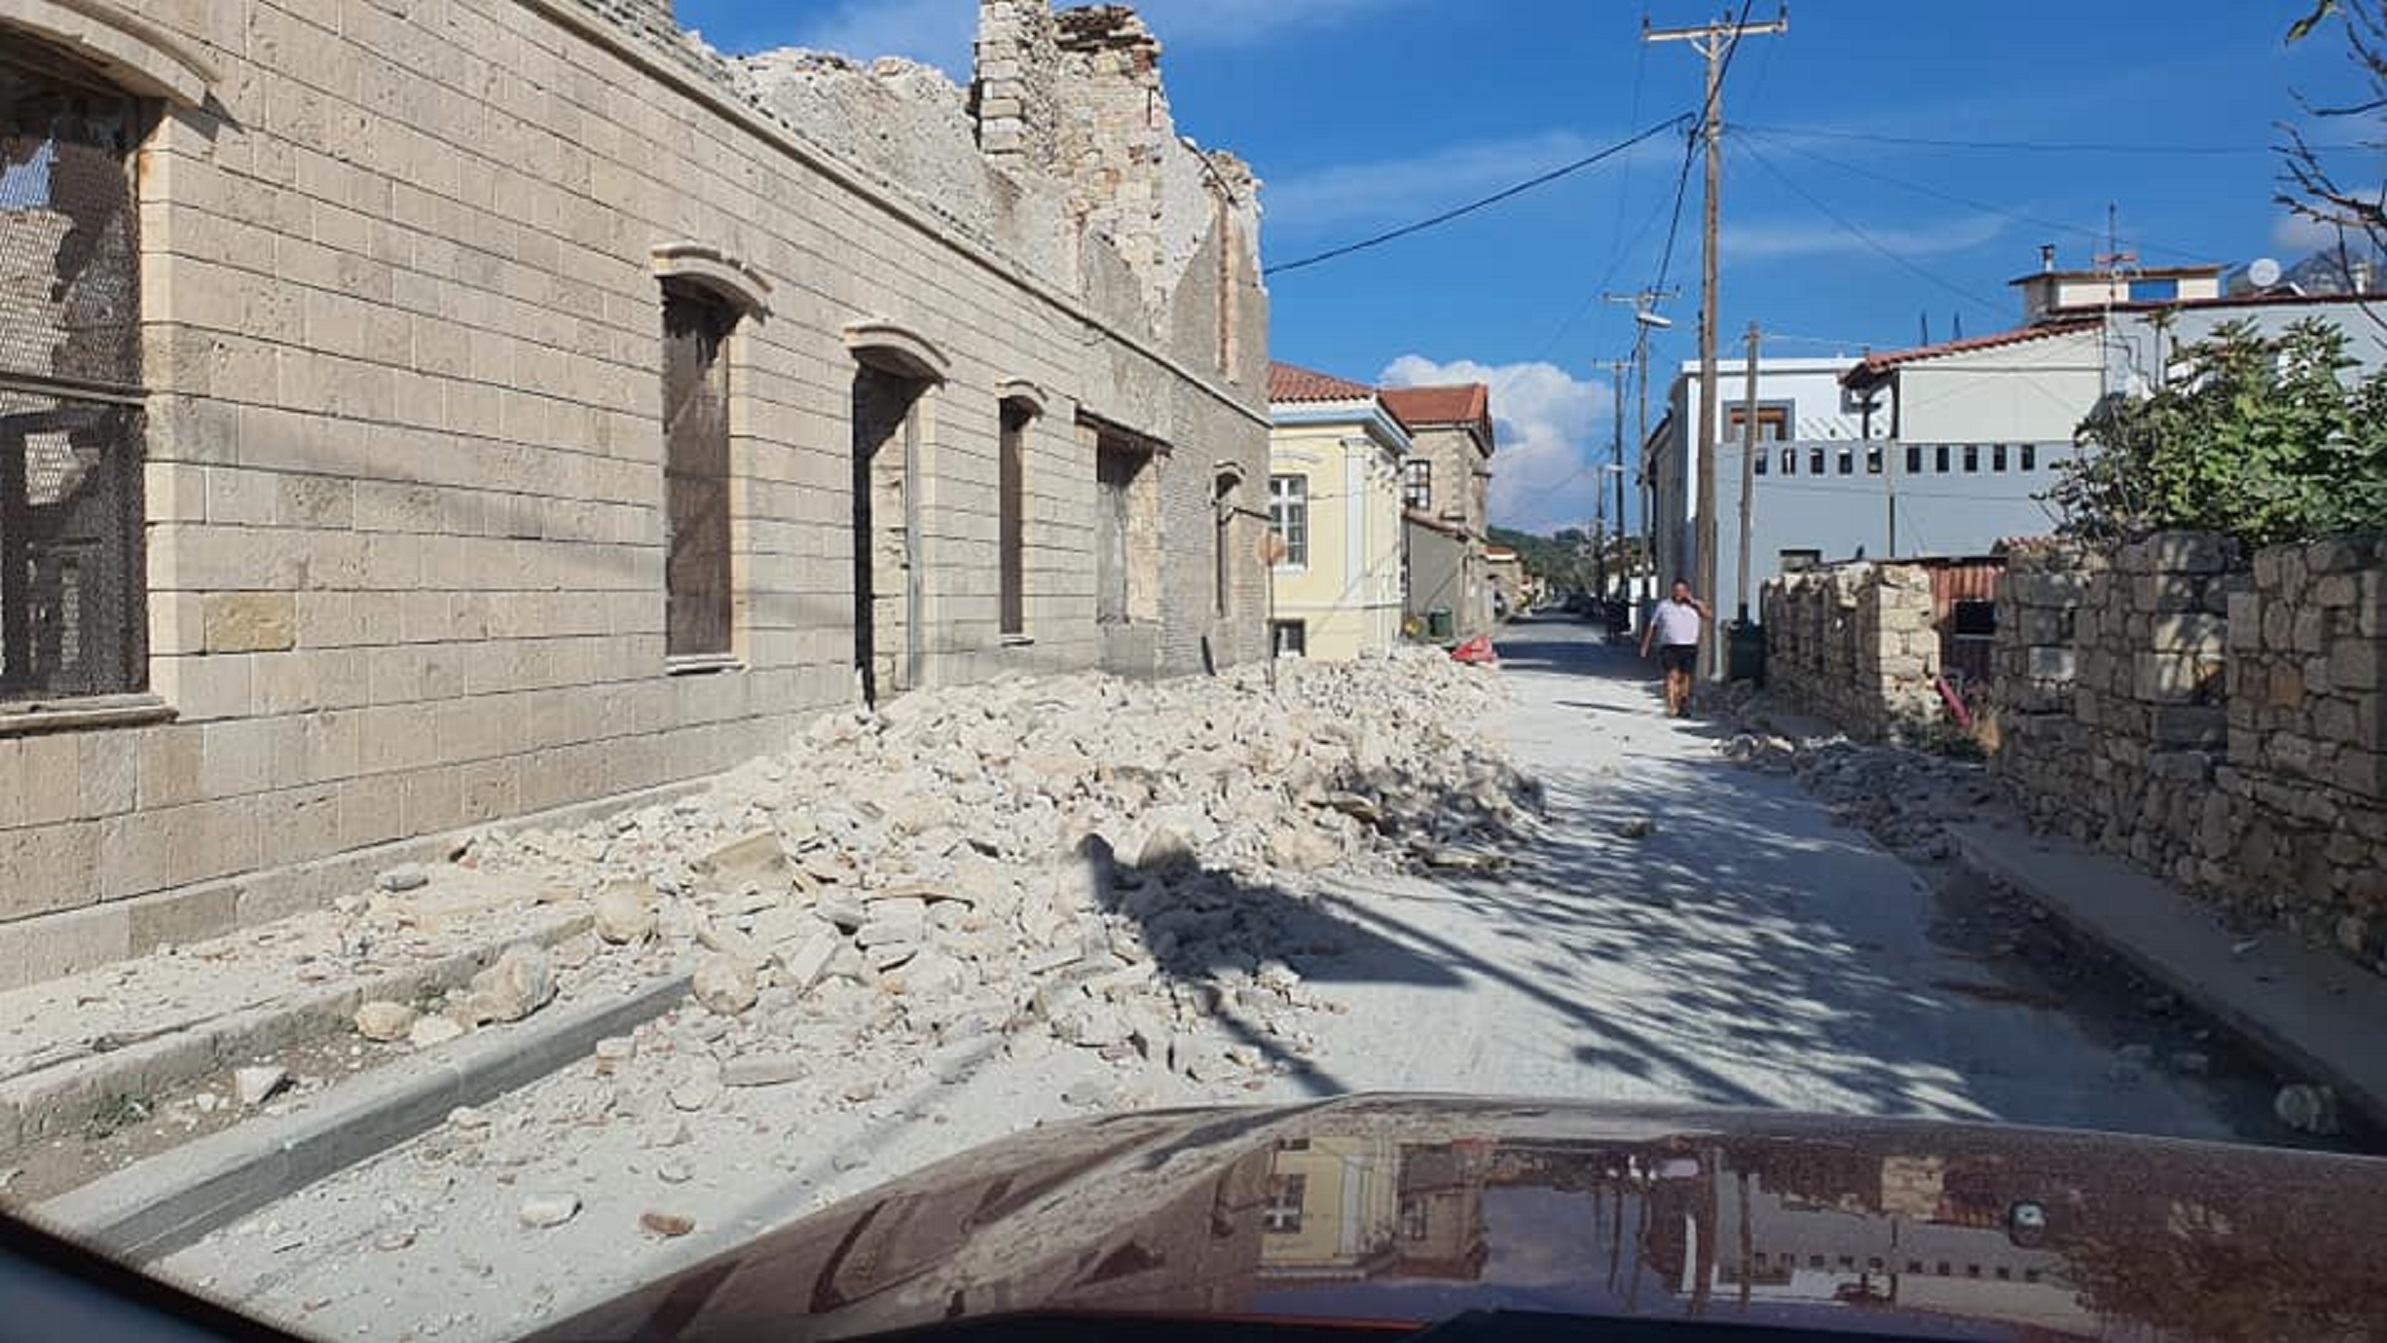 Σεισμός στη Σάμο: Προκλήθηκε από γνωστό υποθαλάσσιο ρήγμα μήκους 25 χλμ